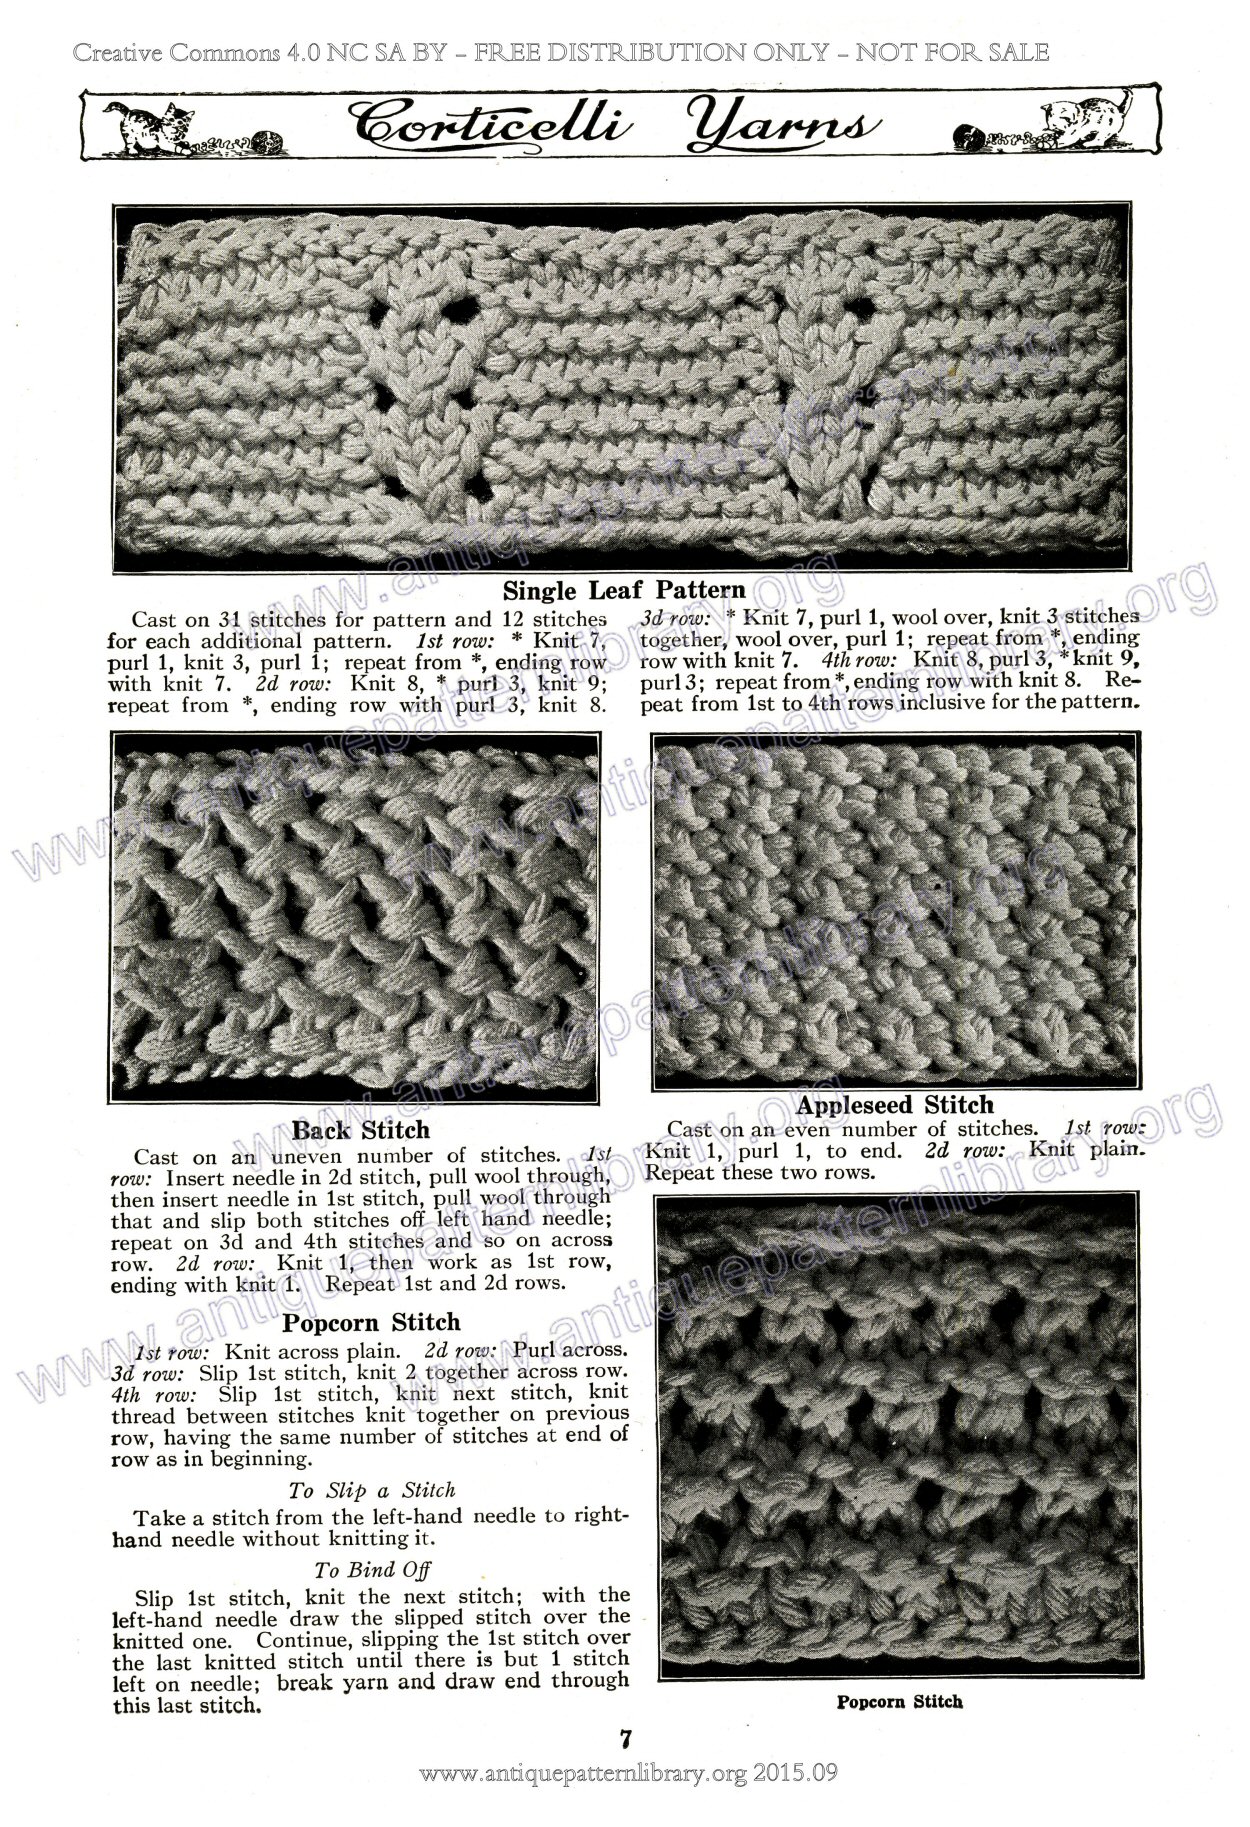 E-MC001 Corticelli Yarn Book no. 8